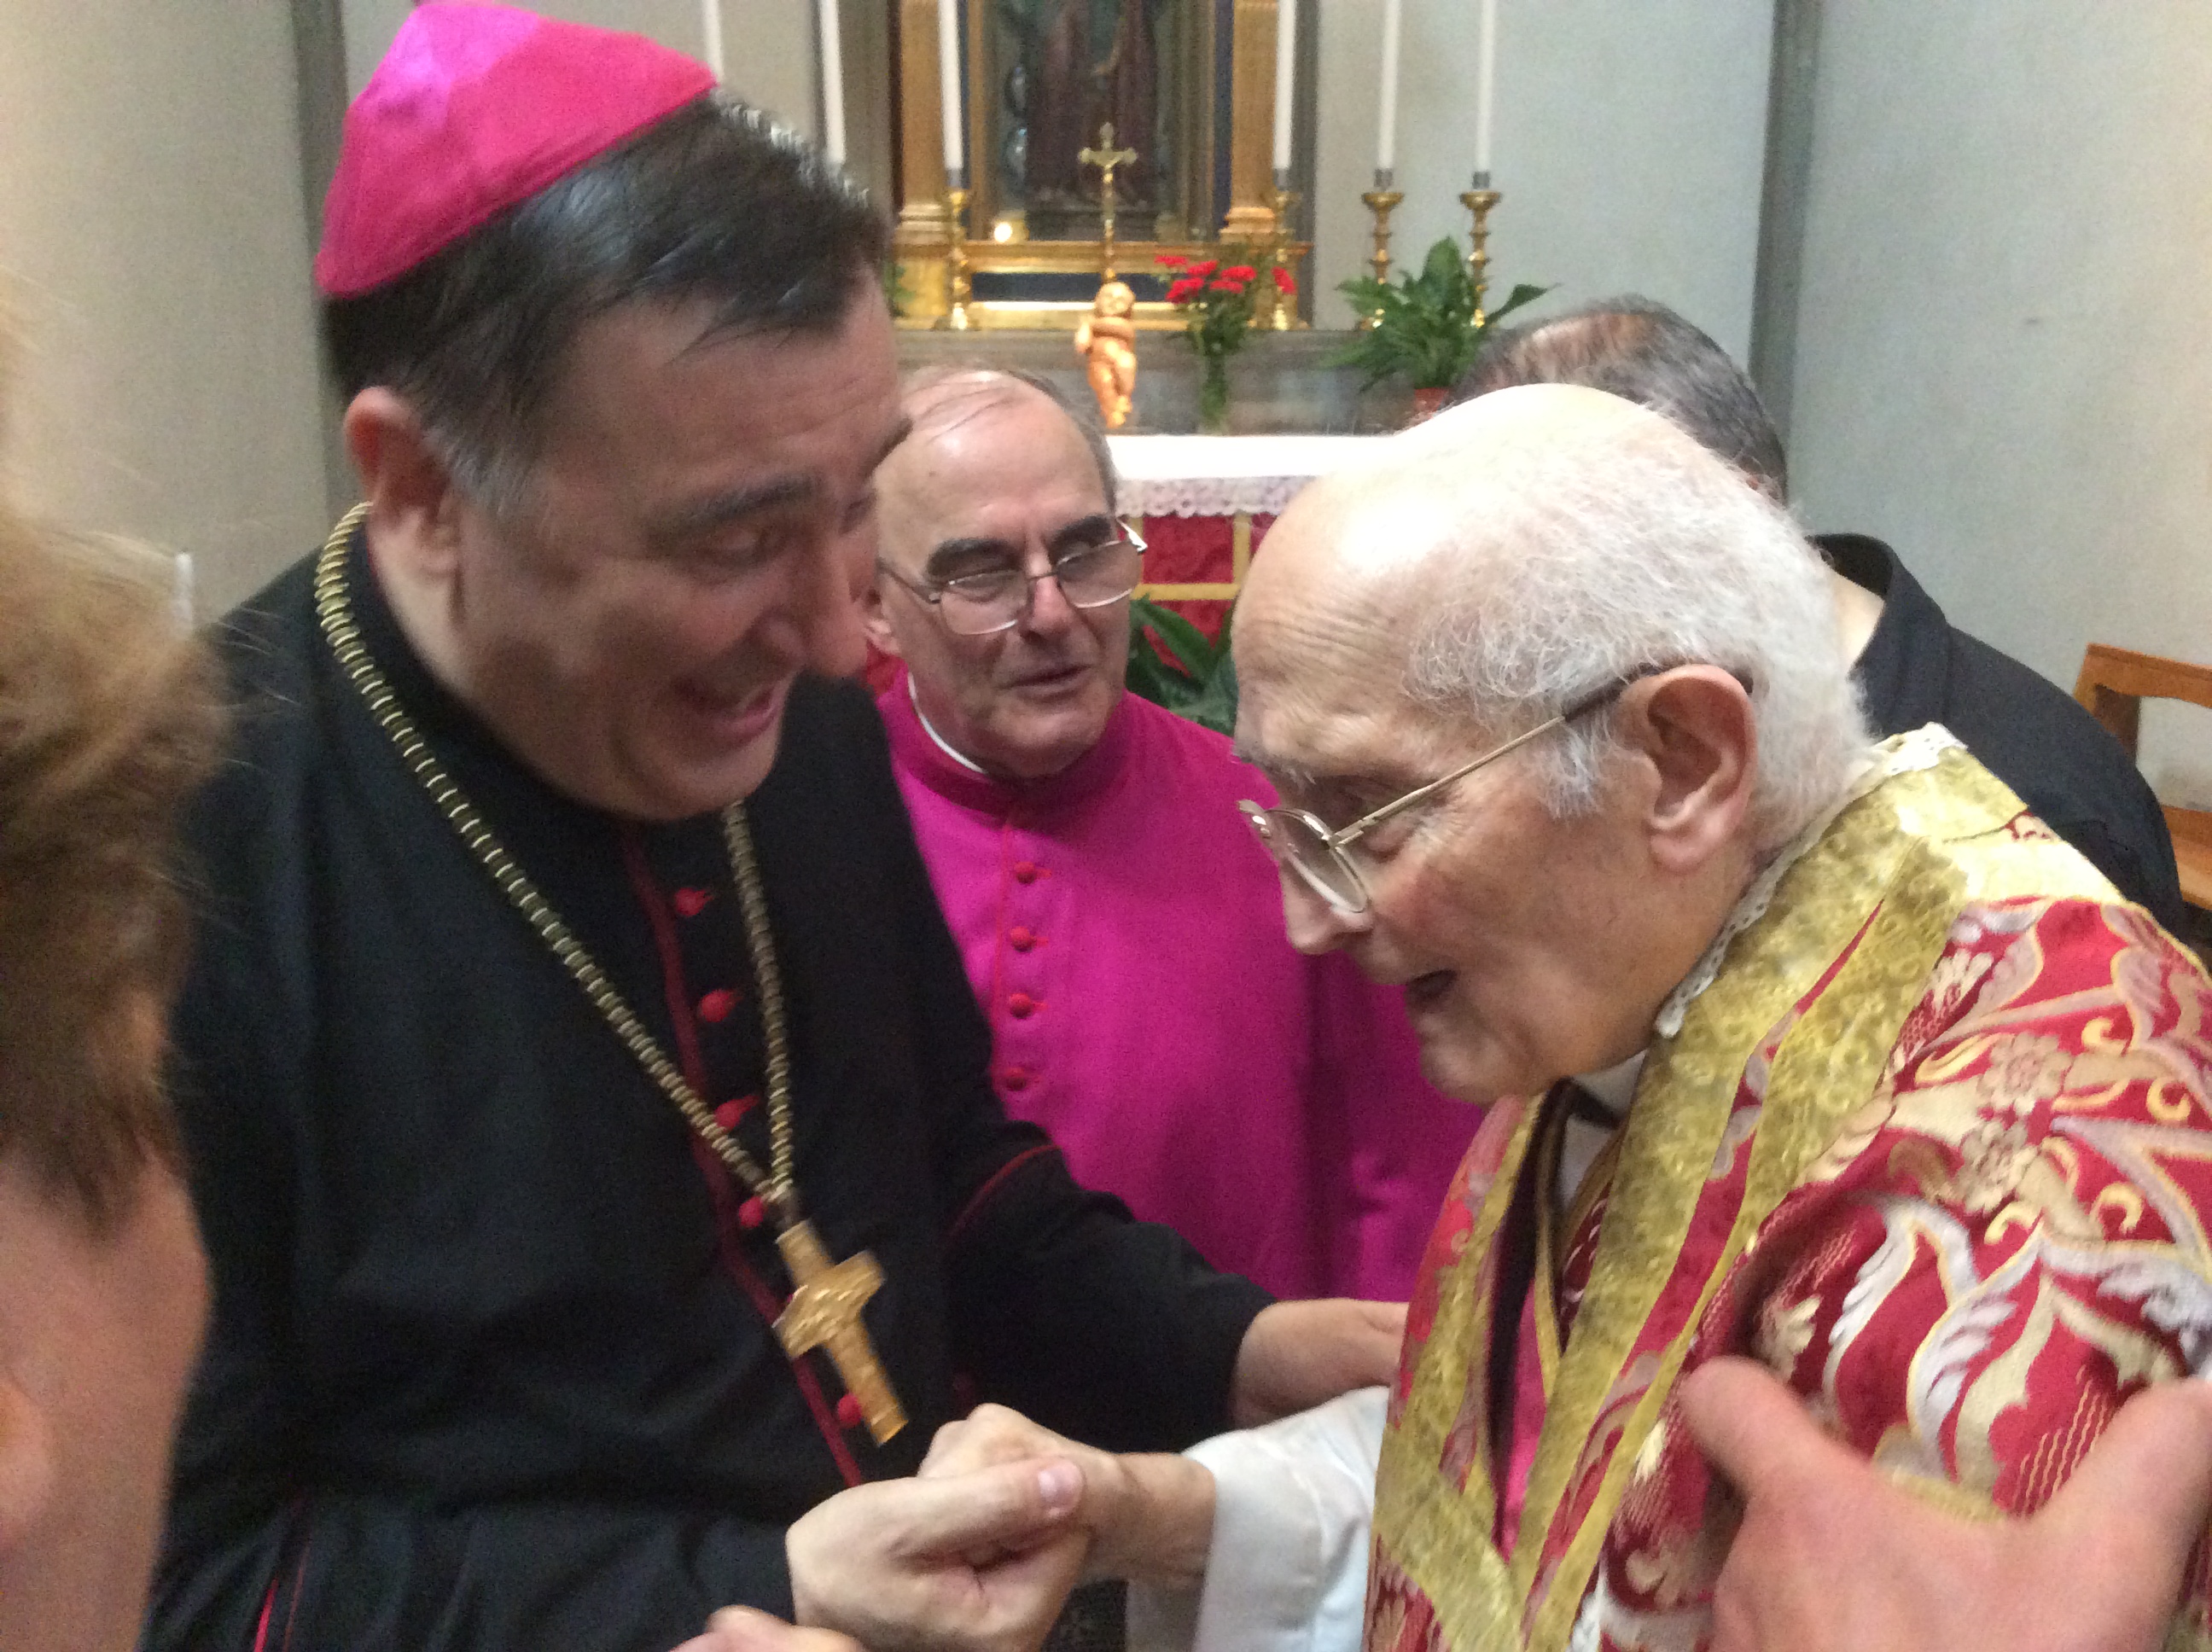 Vescovo Maniago con Mons Angiolo Livi  san lorenzo 2014 – foto giornalista Franco Mariani (6)